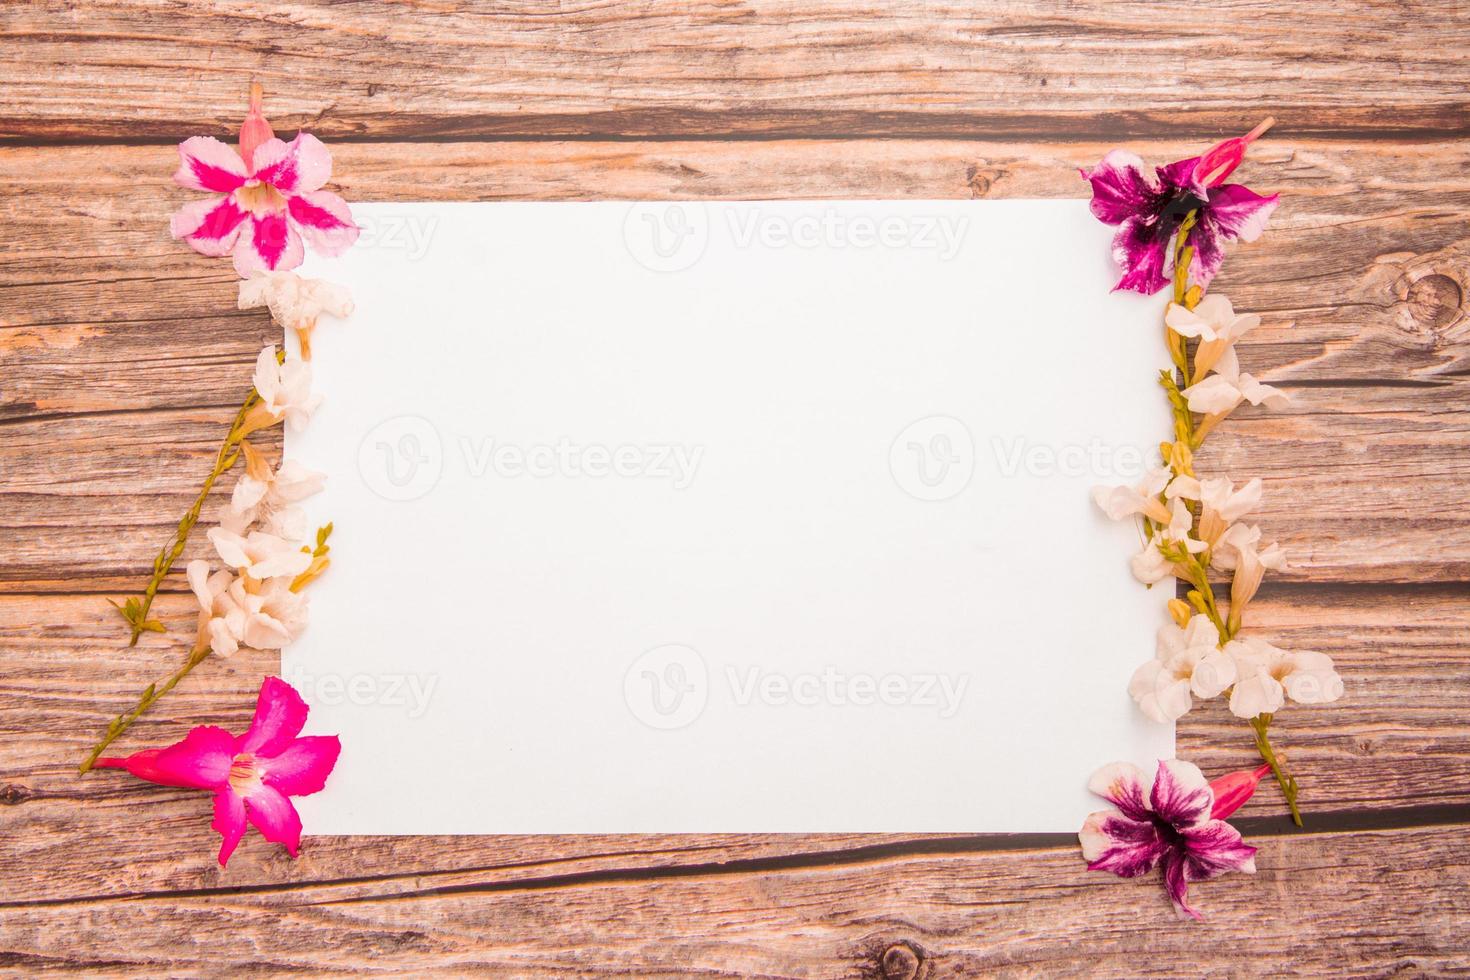 fiori di azalea rosa con fiori bianchi di asystasia gangetica e foglio di carta bianco su uno sfondo di legno. bordo primaverile fiore rosa e bianco, vista dall'alto, modello vuoto per il testo. disteso. foto